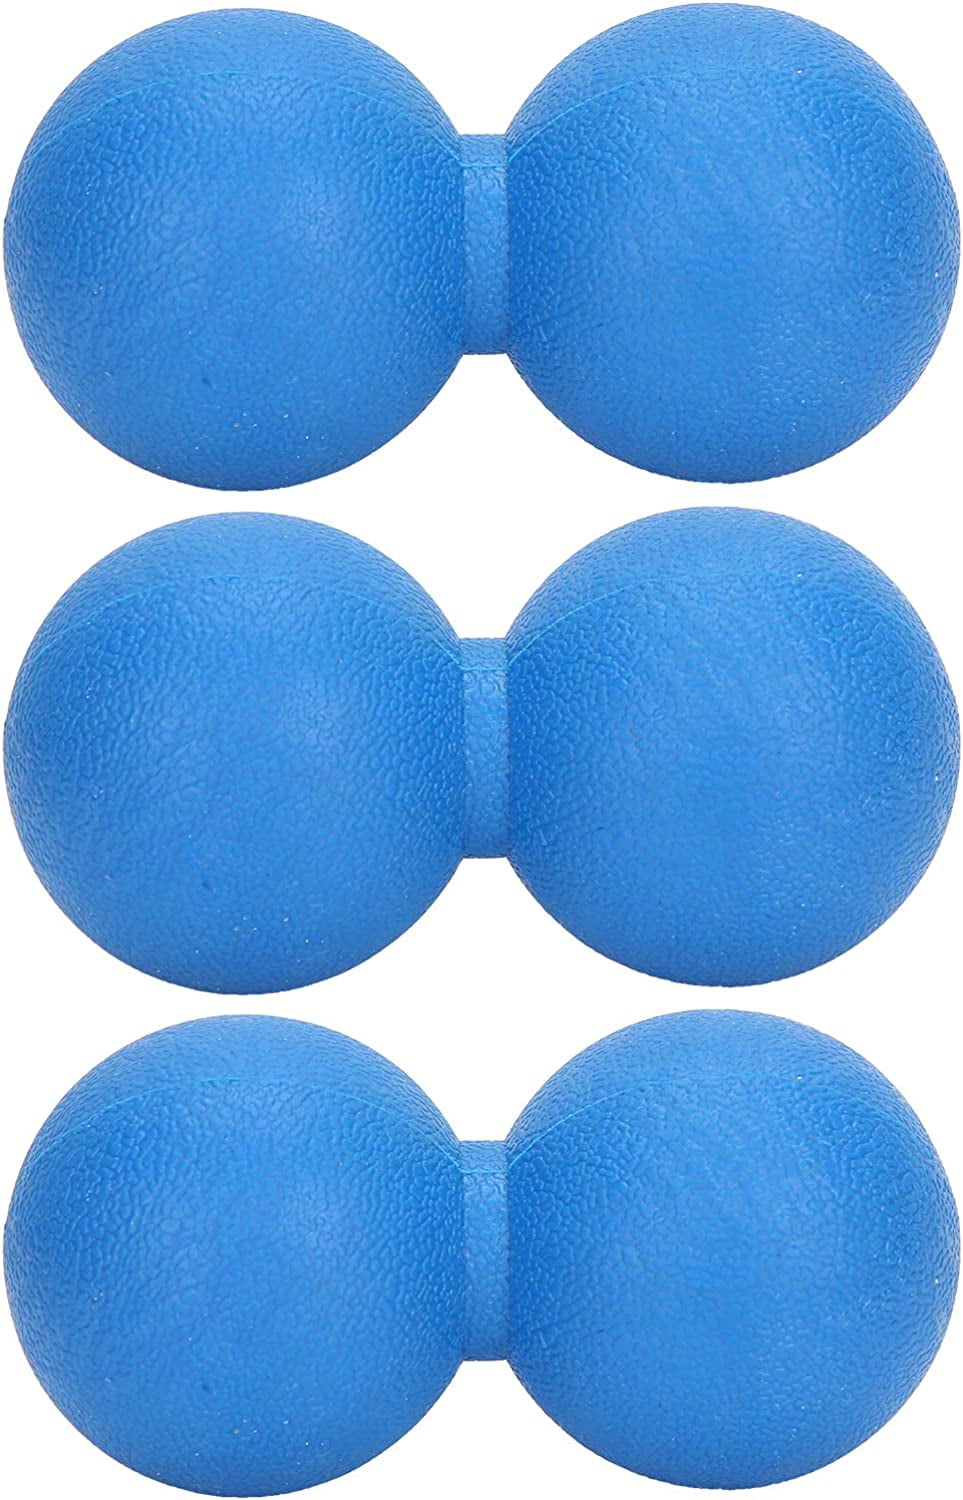 3pcs Yoga Training Massage Balls Peanut Shape Muscle Relaxation Fitness  Massage Balls(Blue) 